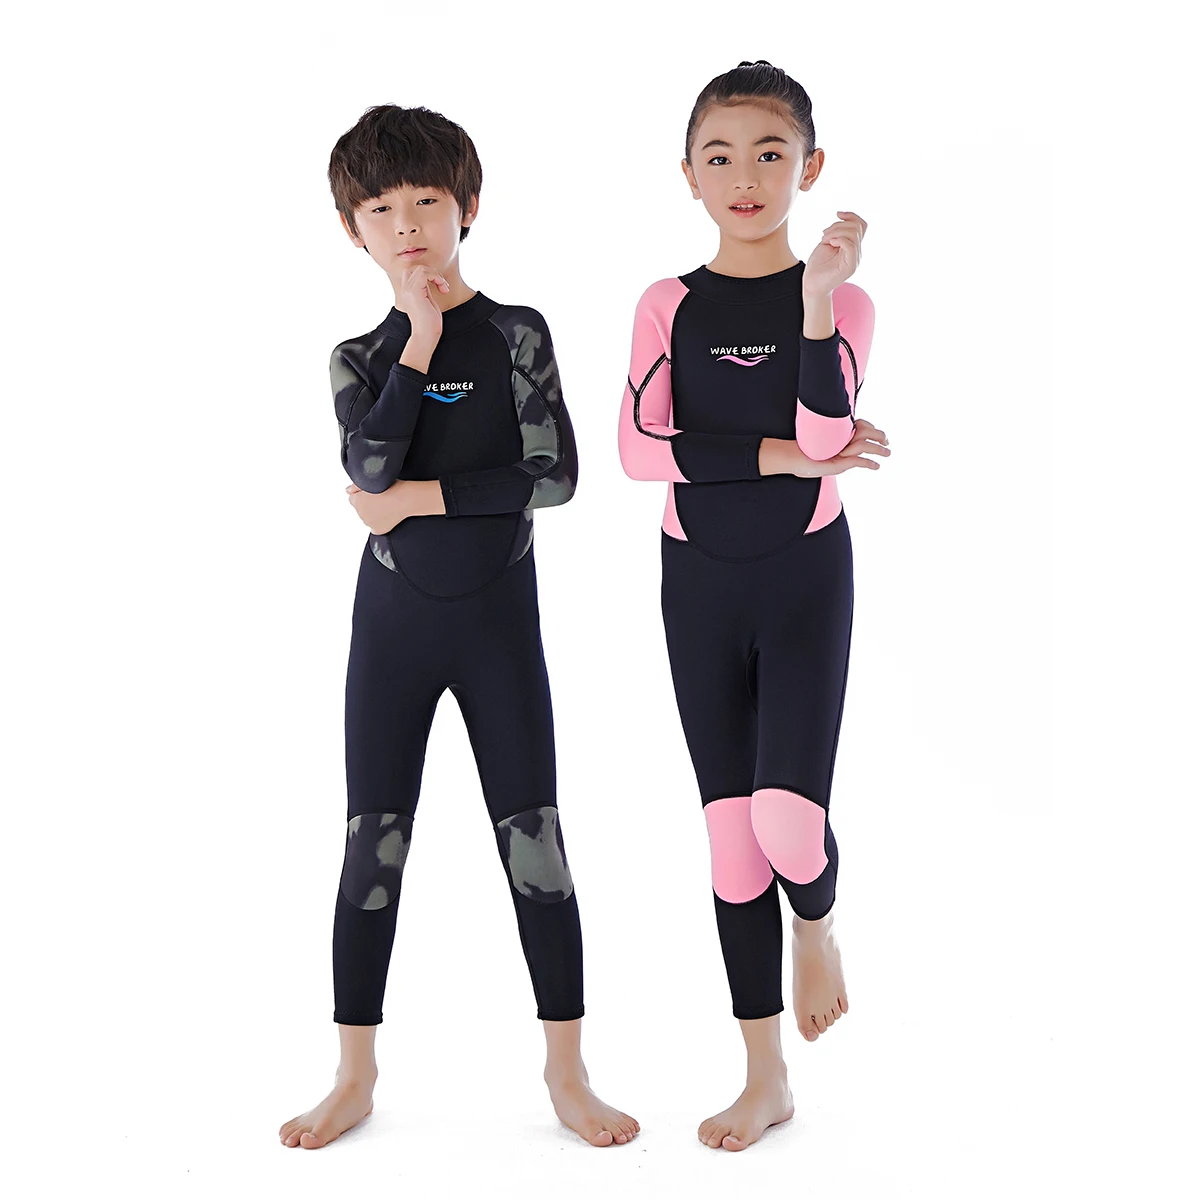 3毫米儿童长袖潜水衣沙滩潜水泳衣 Buy 全潜水服氯丁橡胶 孩子们潜水服 潜水服的孩子product On Alibaba Com